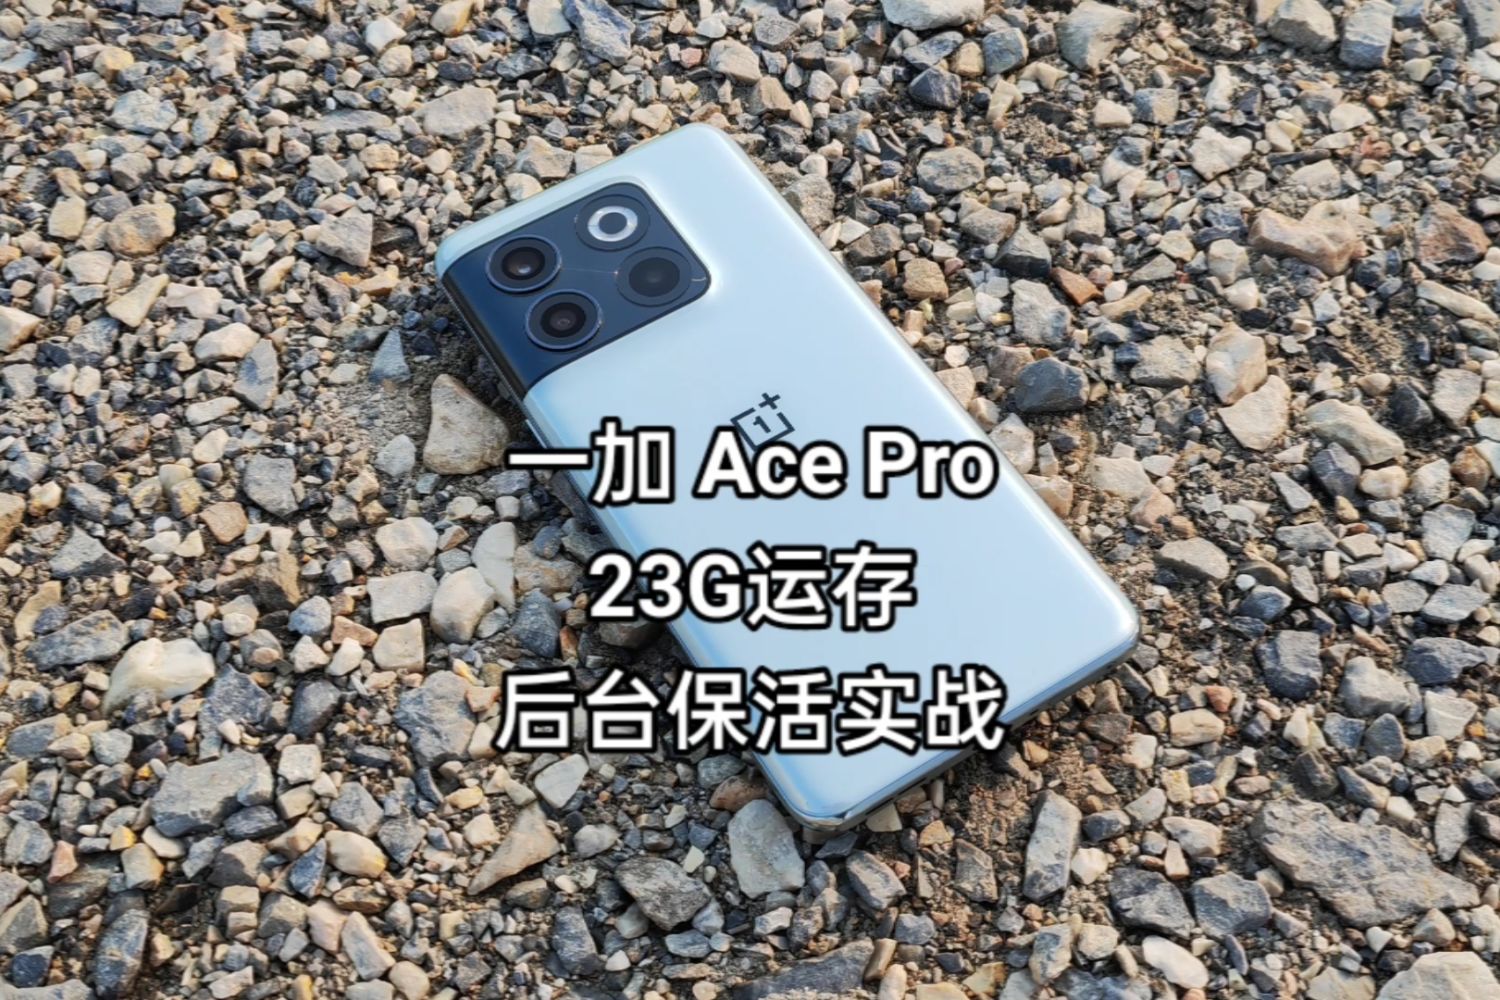 23G运存丨一加Ace Pro后台应用保活实战